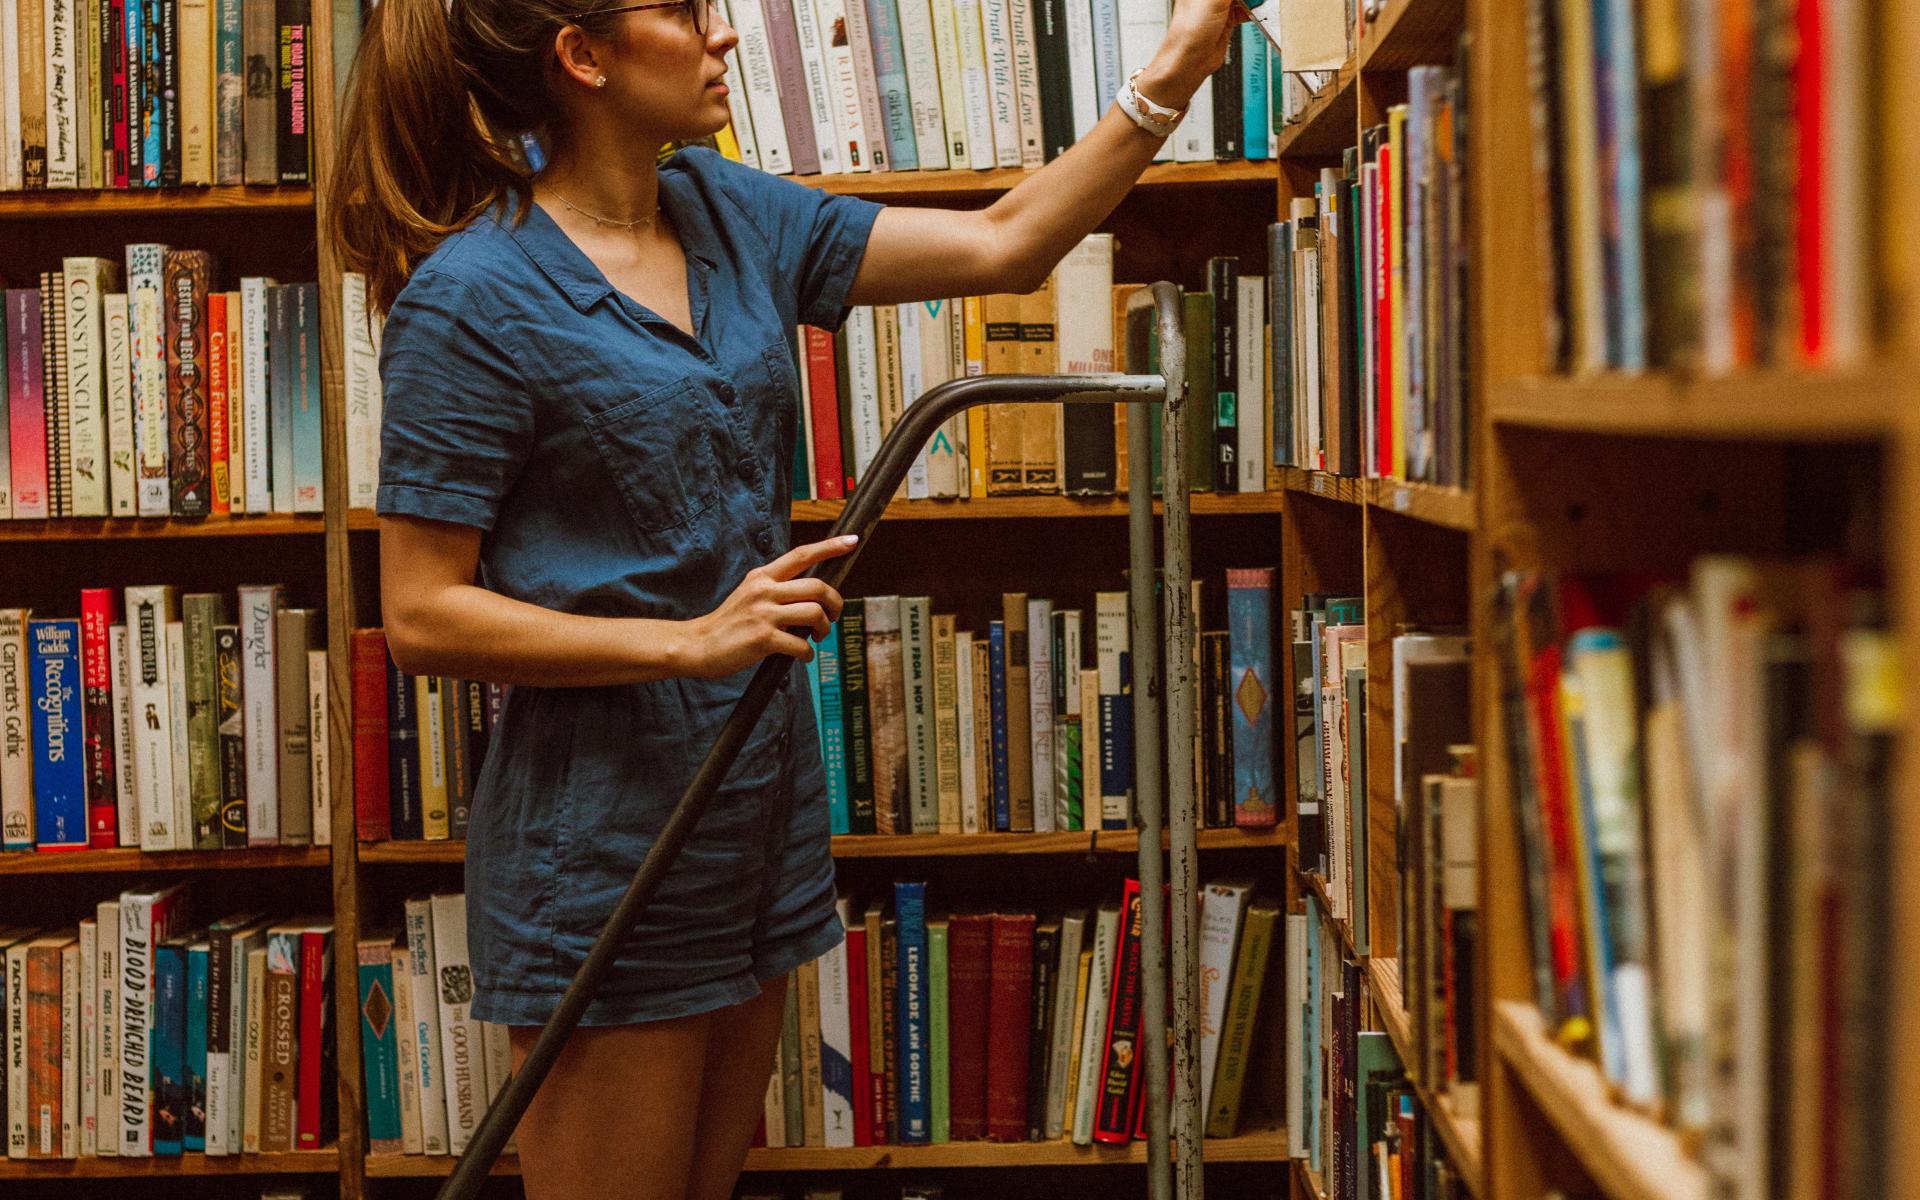 Junge Frau auf einer Leiter vor dem Bücherregal